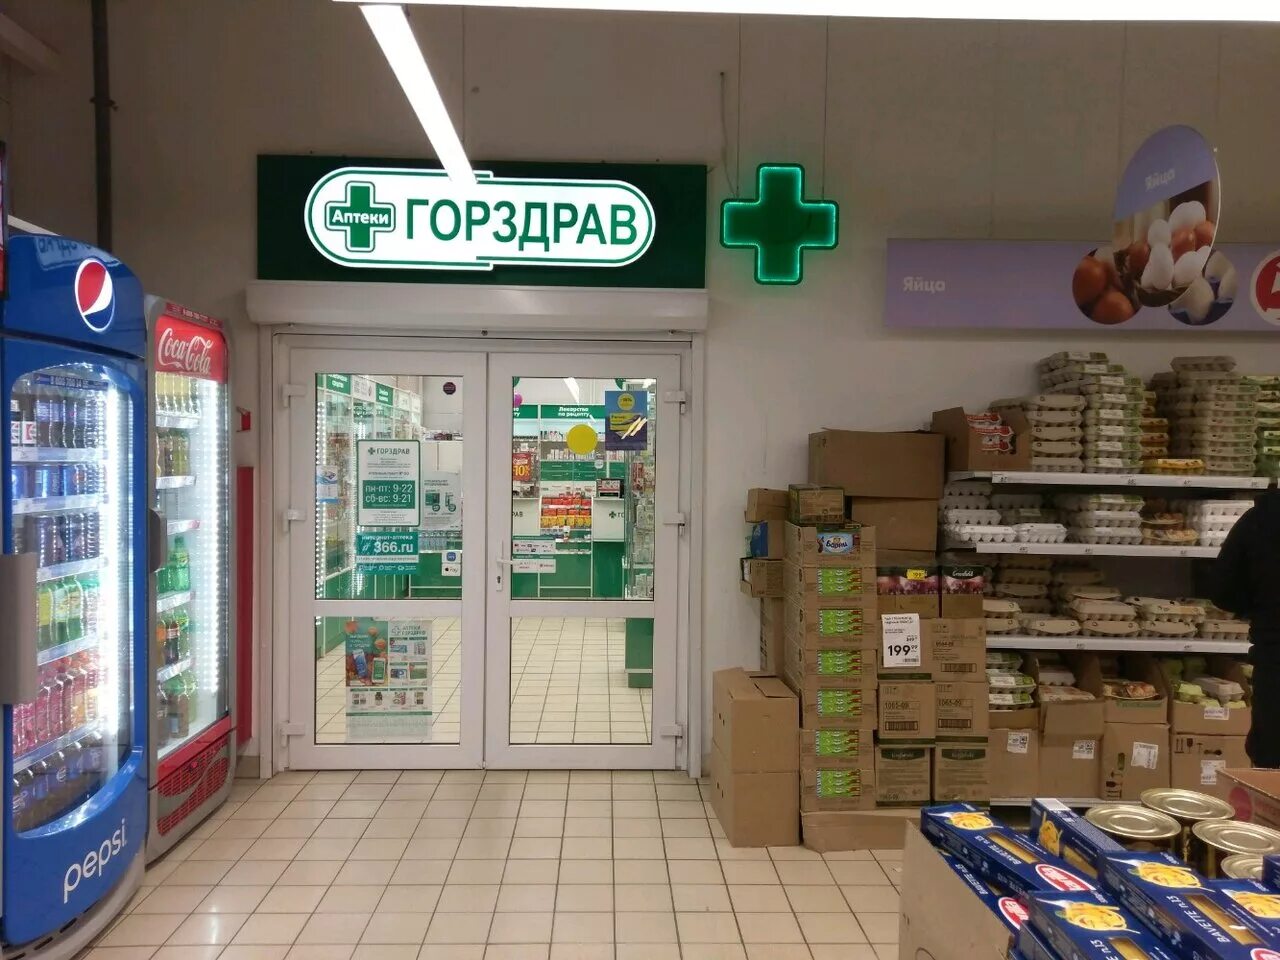 Купить в аптеке спб горздрав. ГОРЗДРАВ СПБ аптека СПБ. ГОРЗДРАВ аптека Выборгский район СПБ. ГОРЗДРАВ аптека Воронеж. Аптека ГОРЗДРАВ В Афимолл Сити.